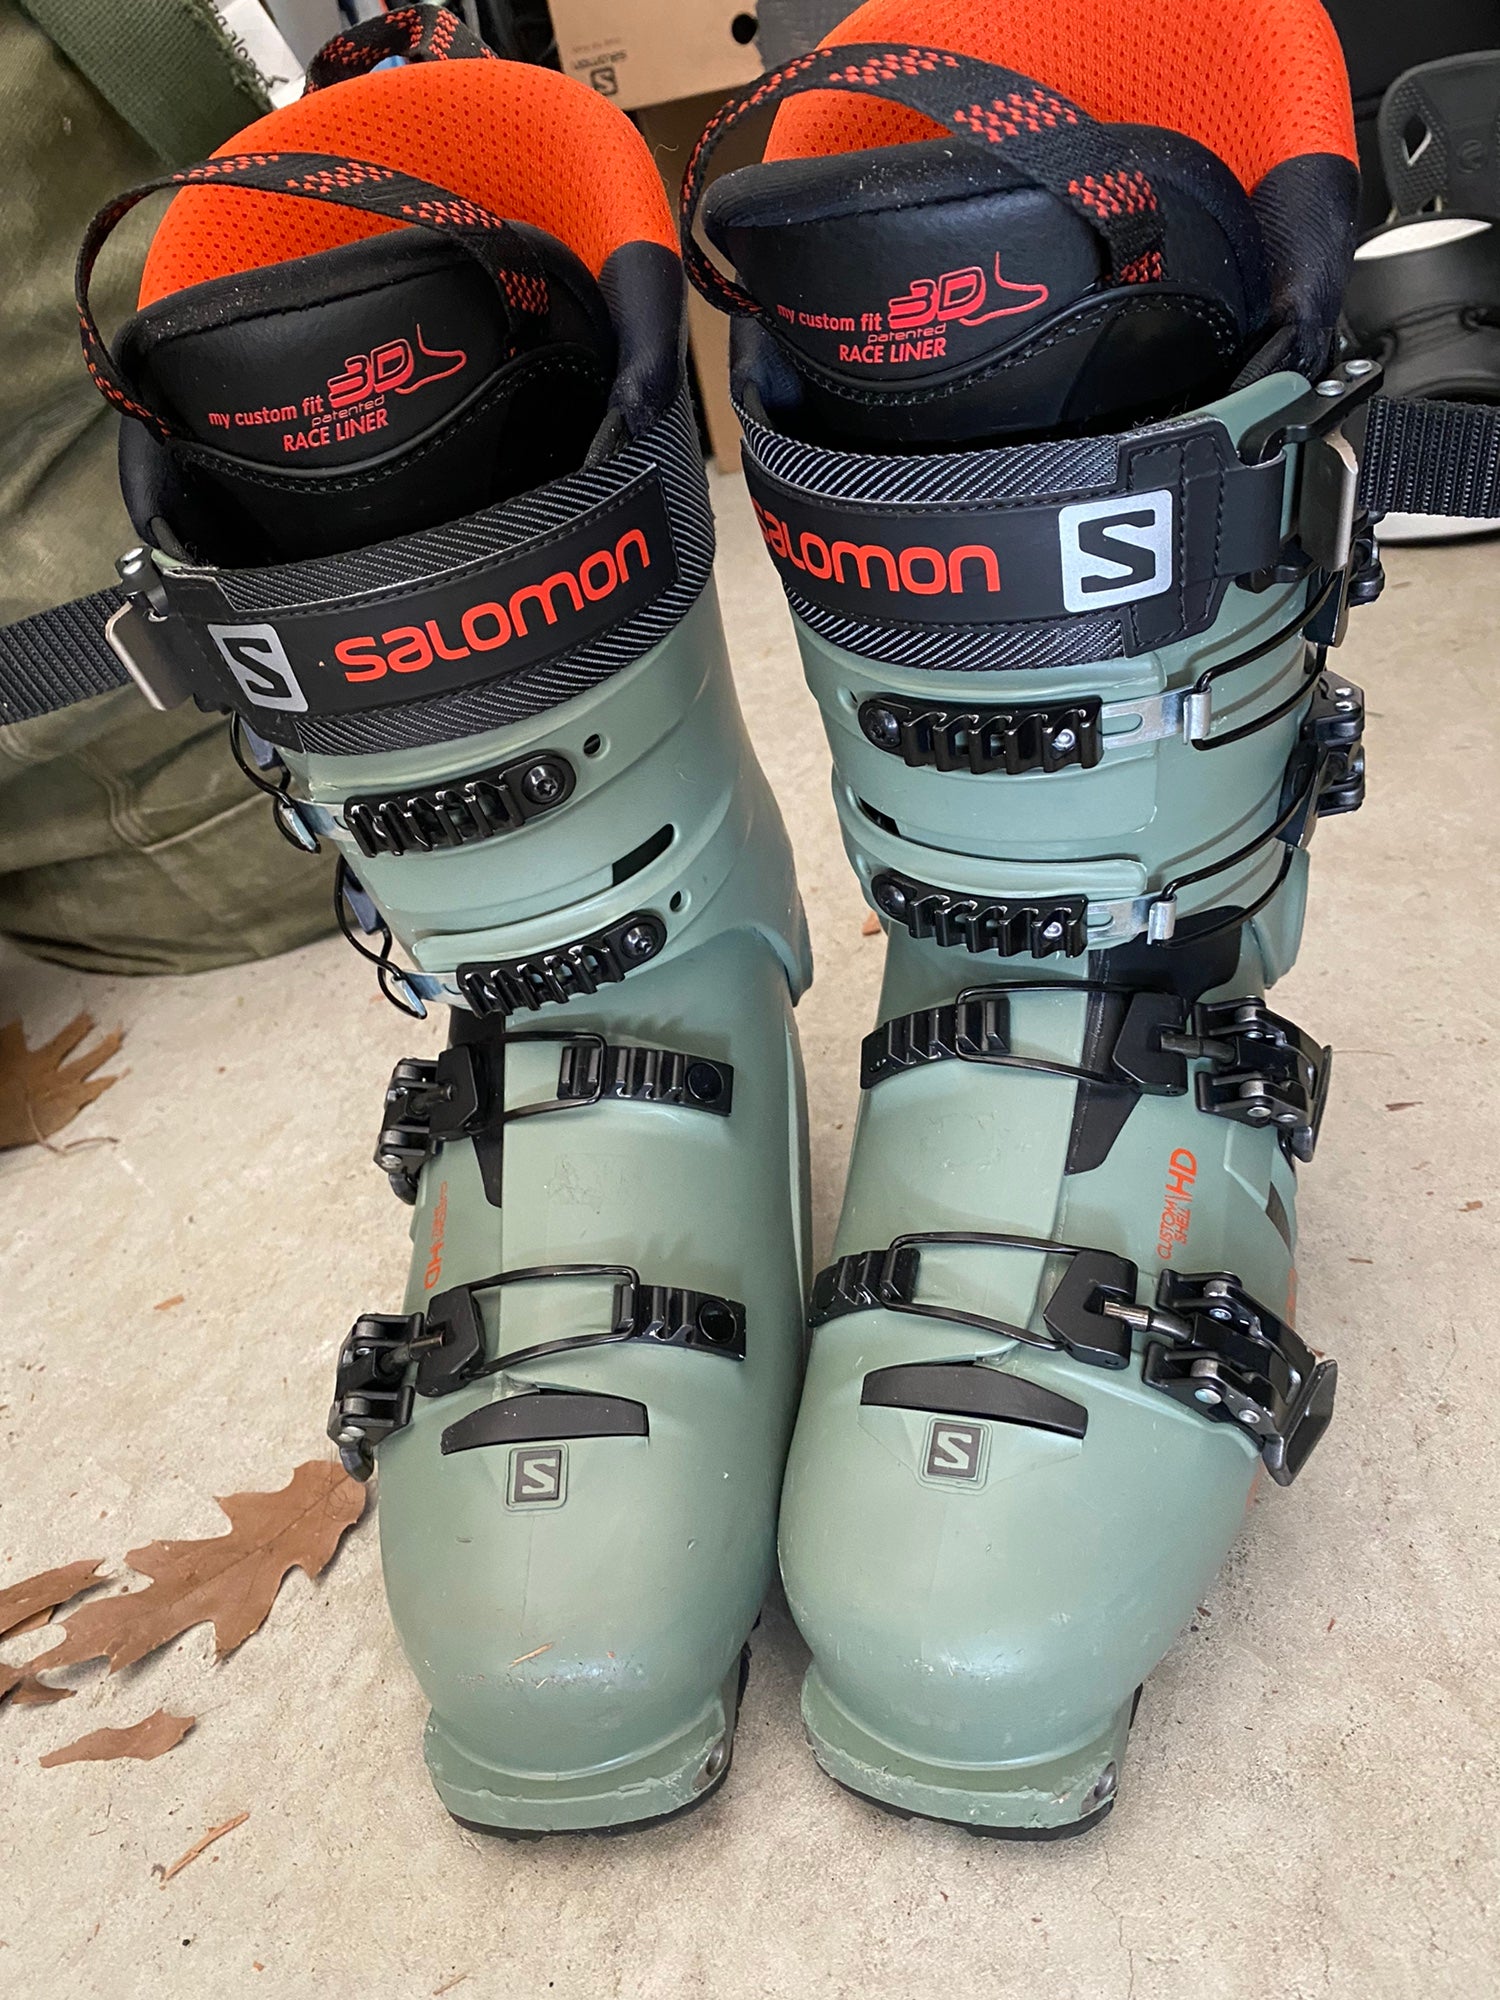 Salomon Shift Pro 130 AT Ski Boots - Men's